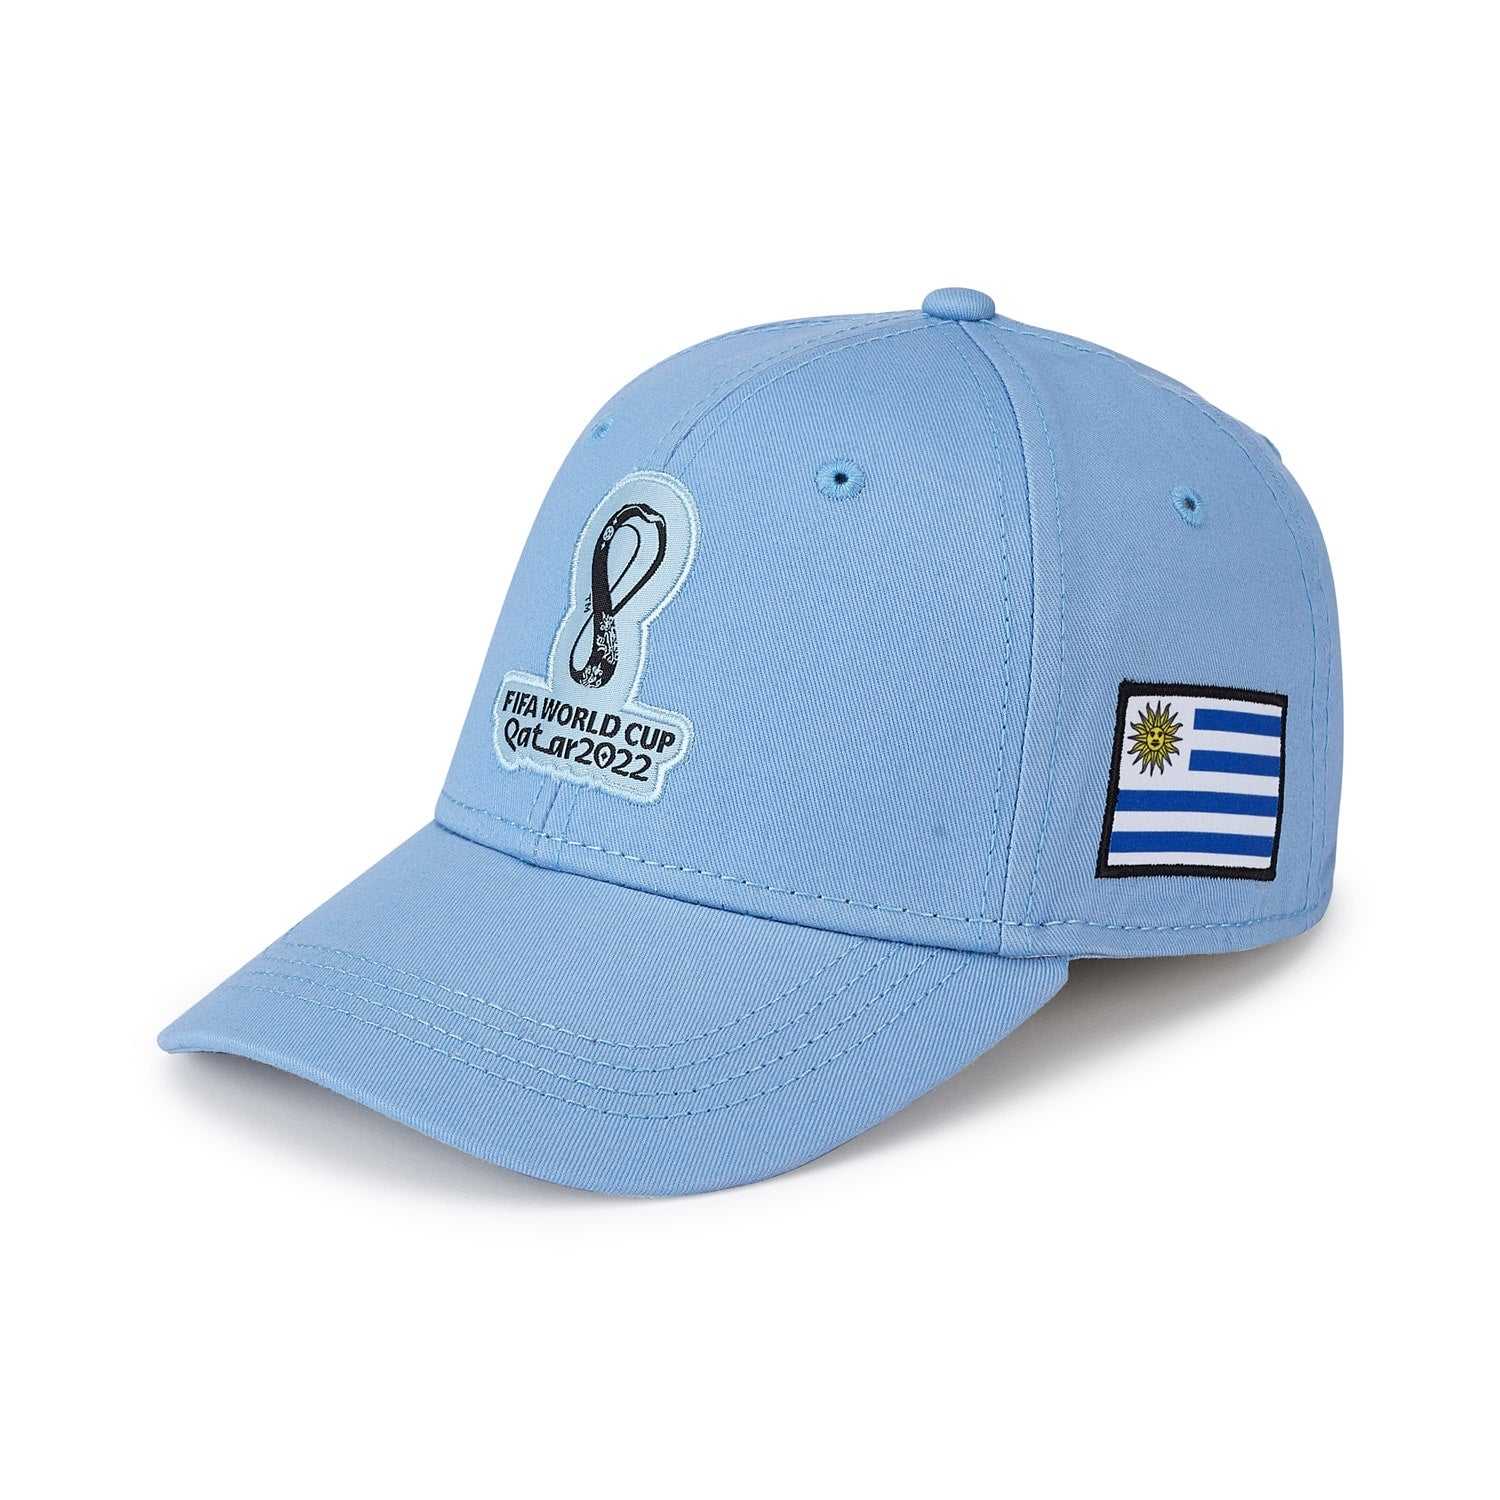 2022 World Cup Uruguay Blue Cap - Mens